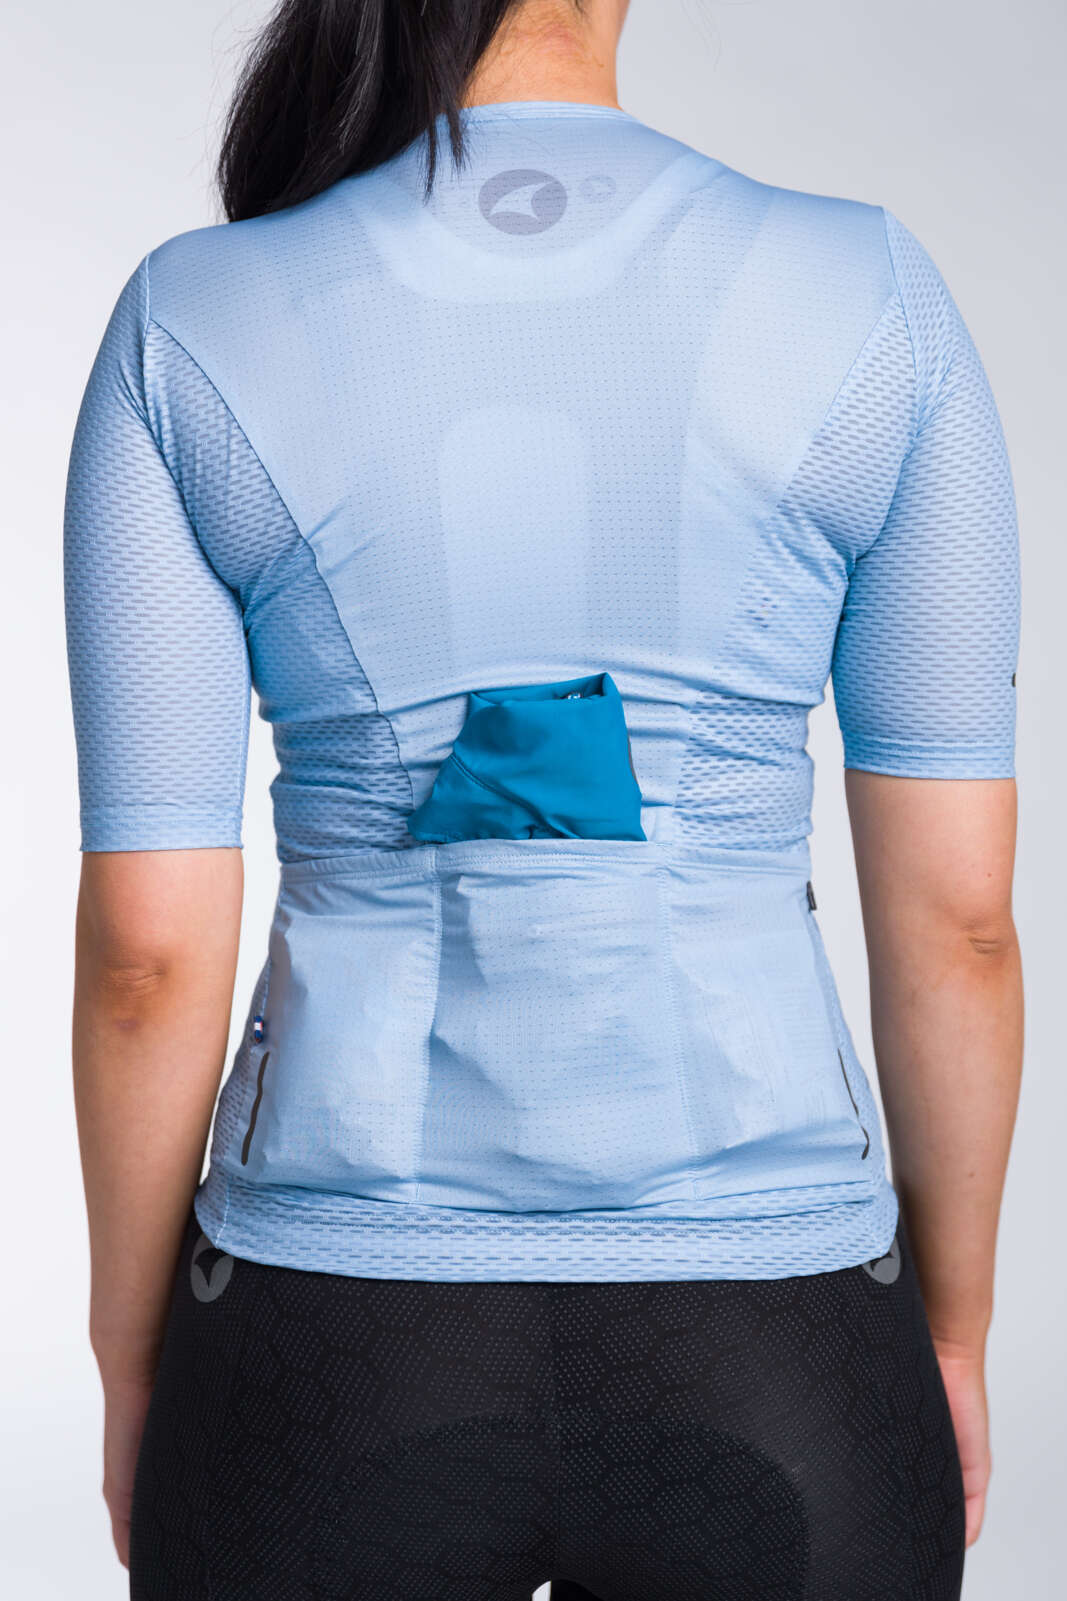 Women's Light Blue Aero Mesh Cycling Jersey  - Stuffed Back Pockets